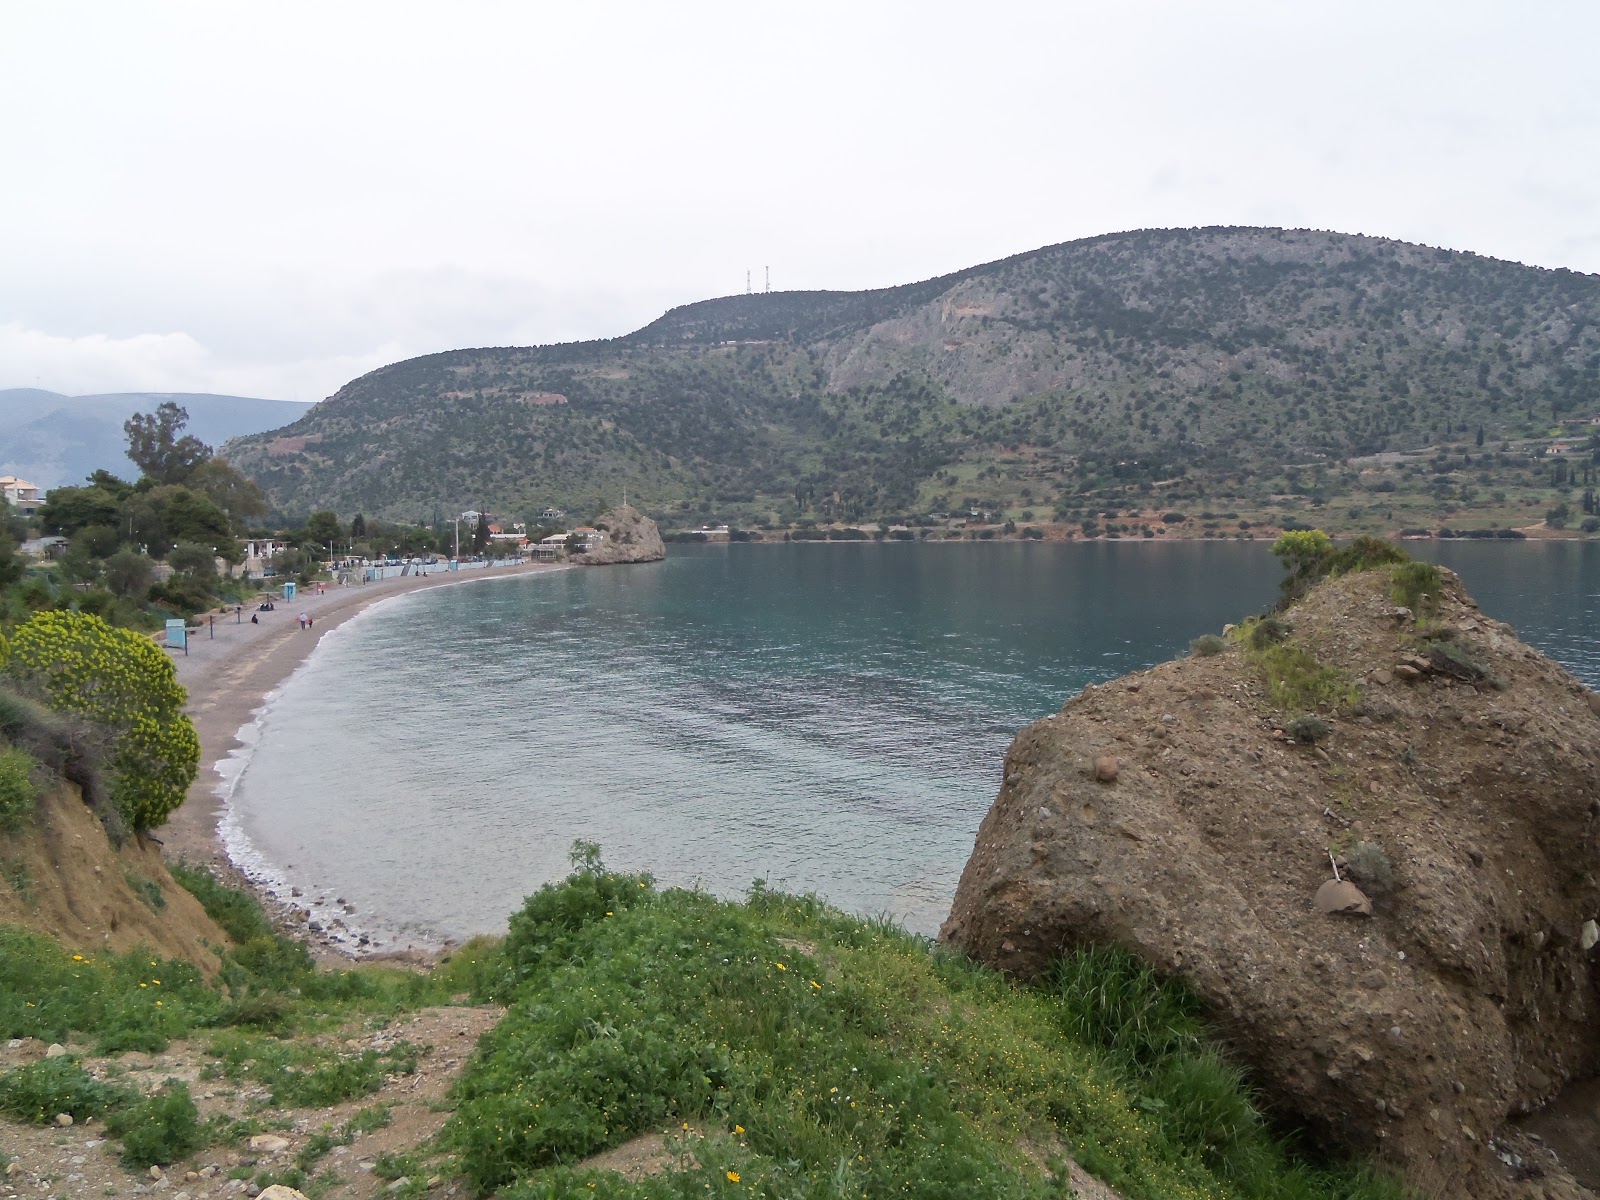 Fotografie cu Agios Isidoros beach cu o suprafață de apa pură turcoaz